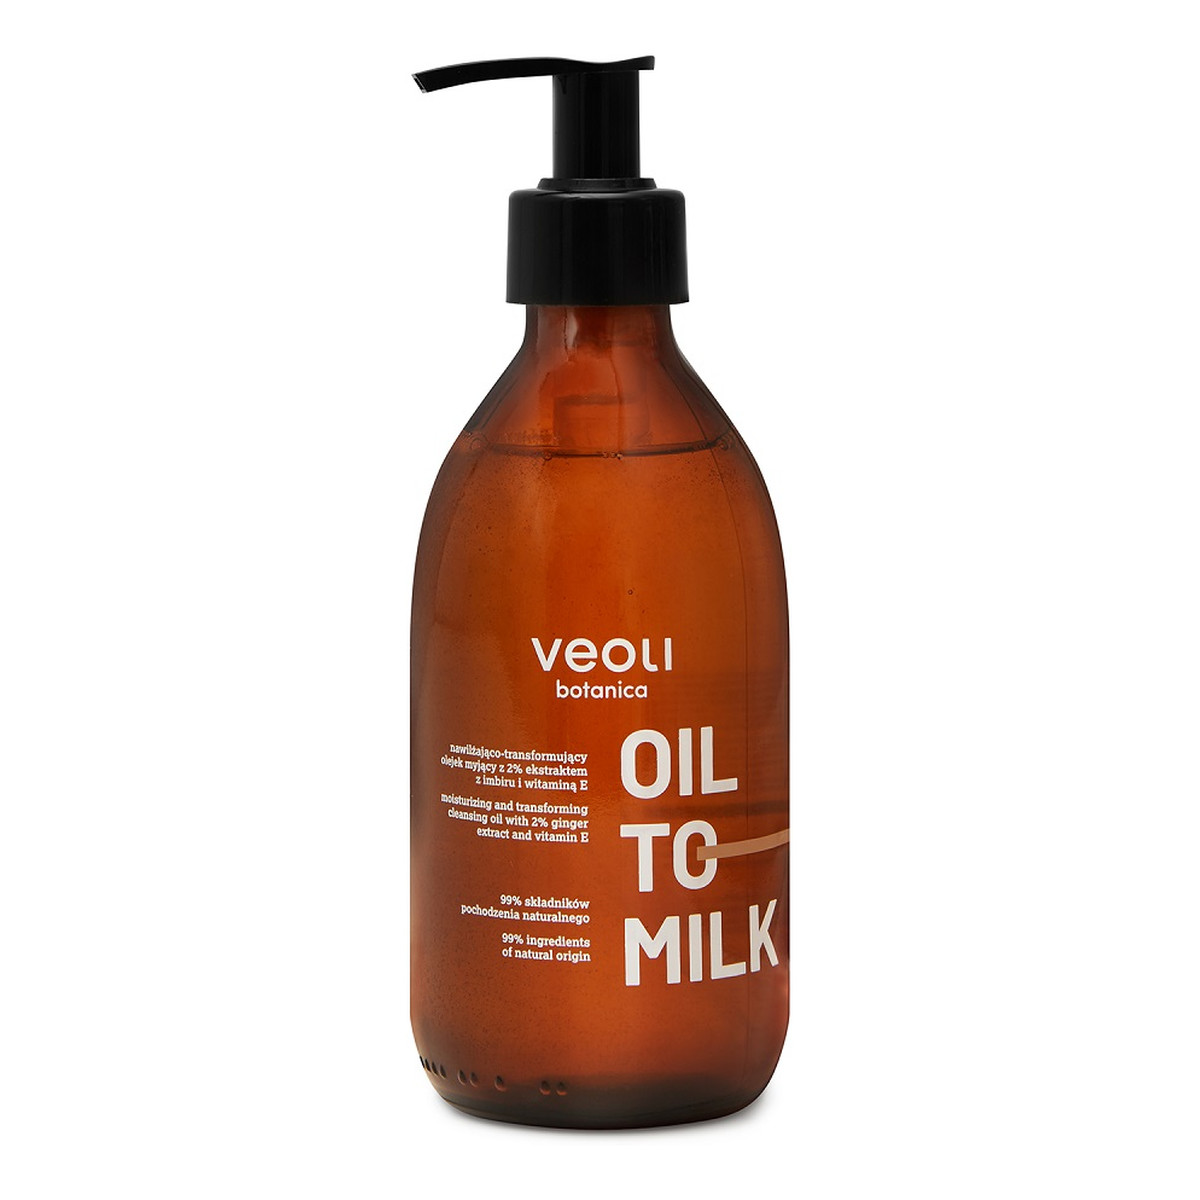 Veoli Botanica Oil to Milk nawilżająco-transformujący Olejek myjący 290ml